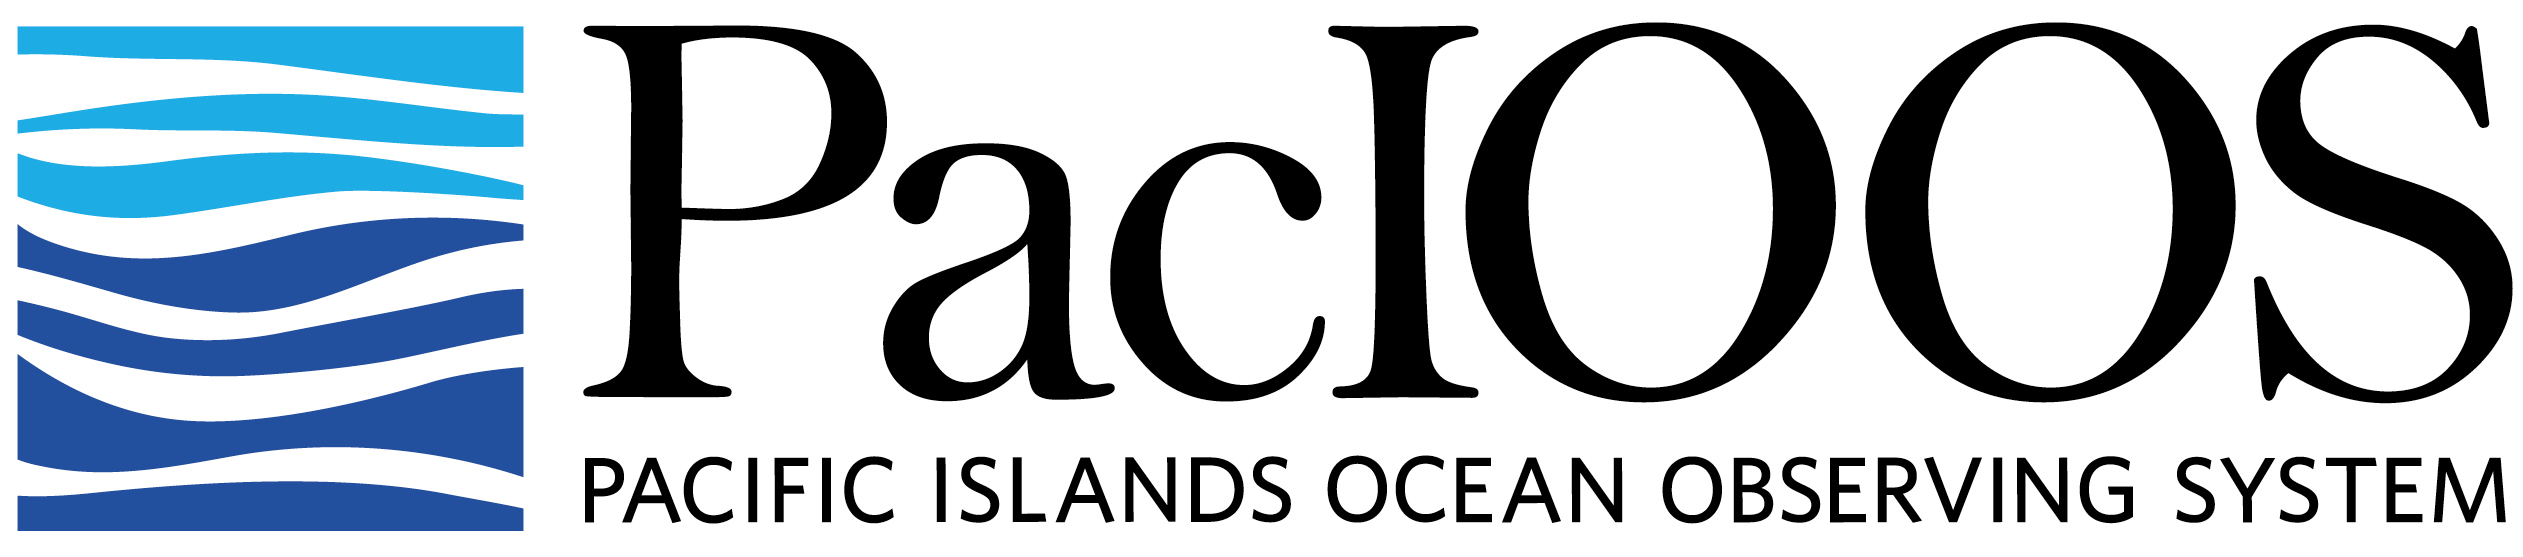 PacIOOS-logo-landscape-large